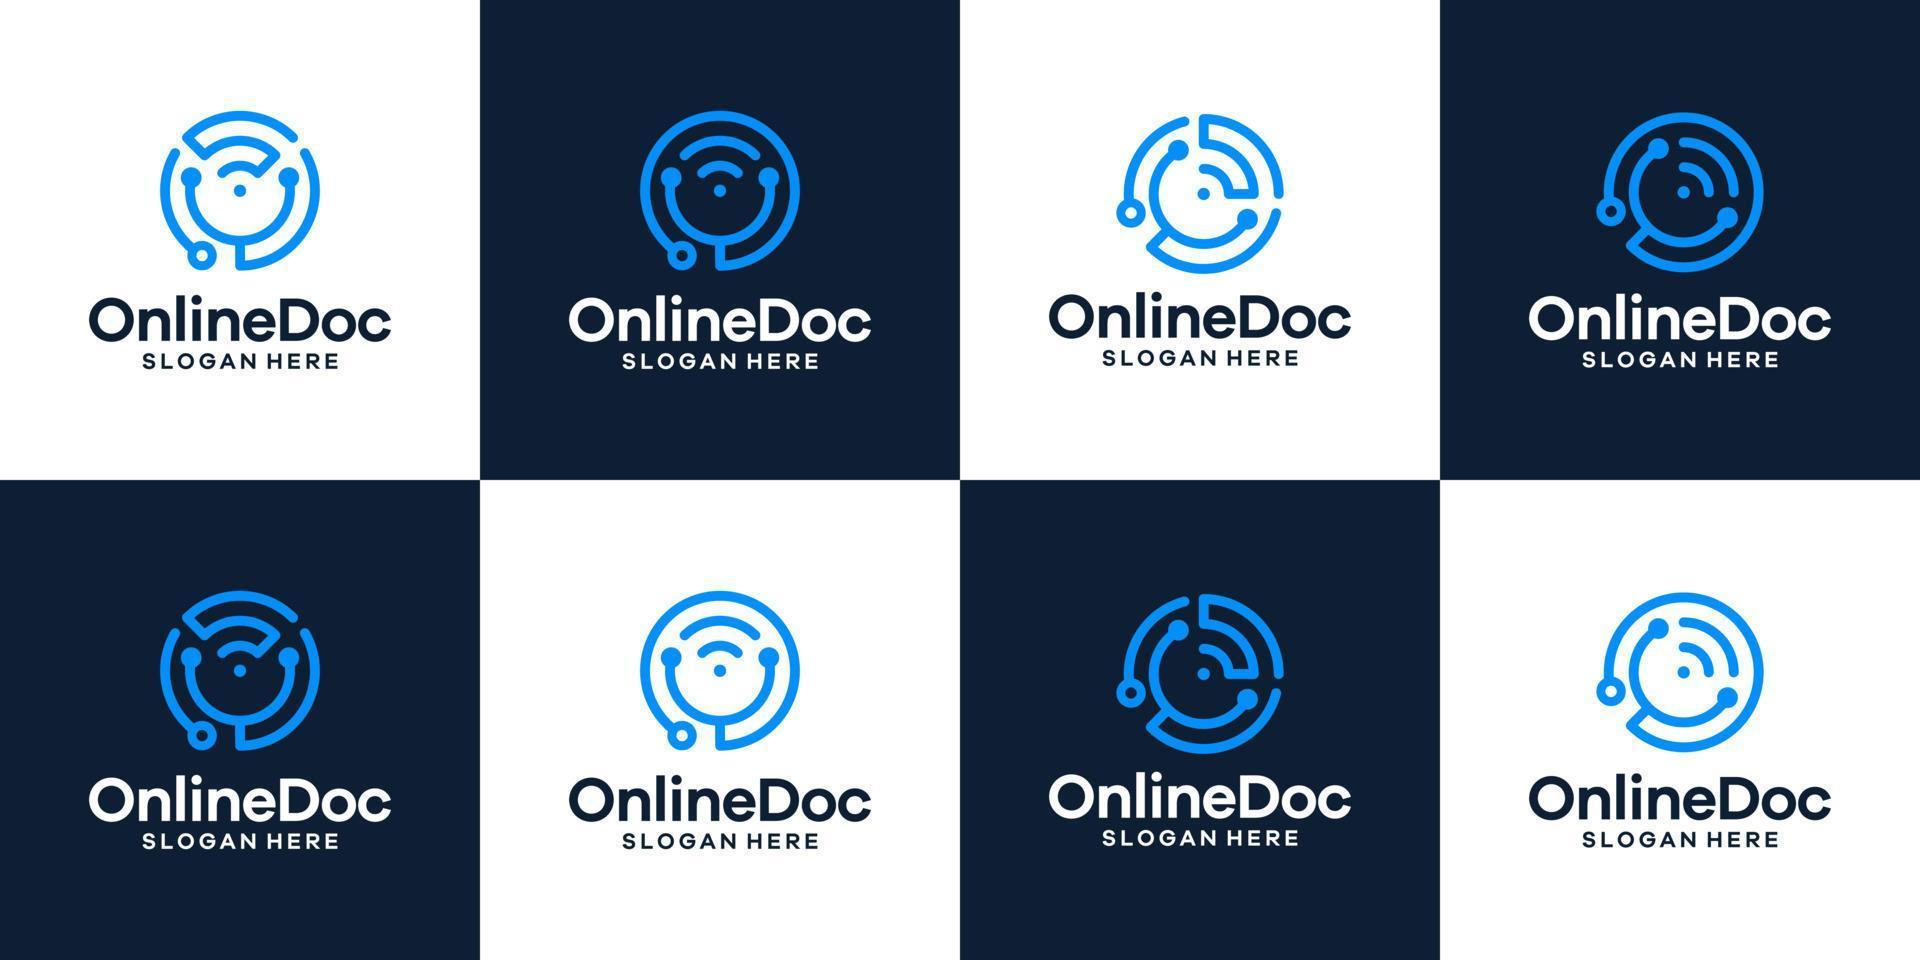 verzameling stethoscoop logo ontwerp met signaal Wifi en brief s grafisch ontwerp vector illustratie. symbool online dokter, icoon, creatief.